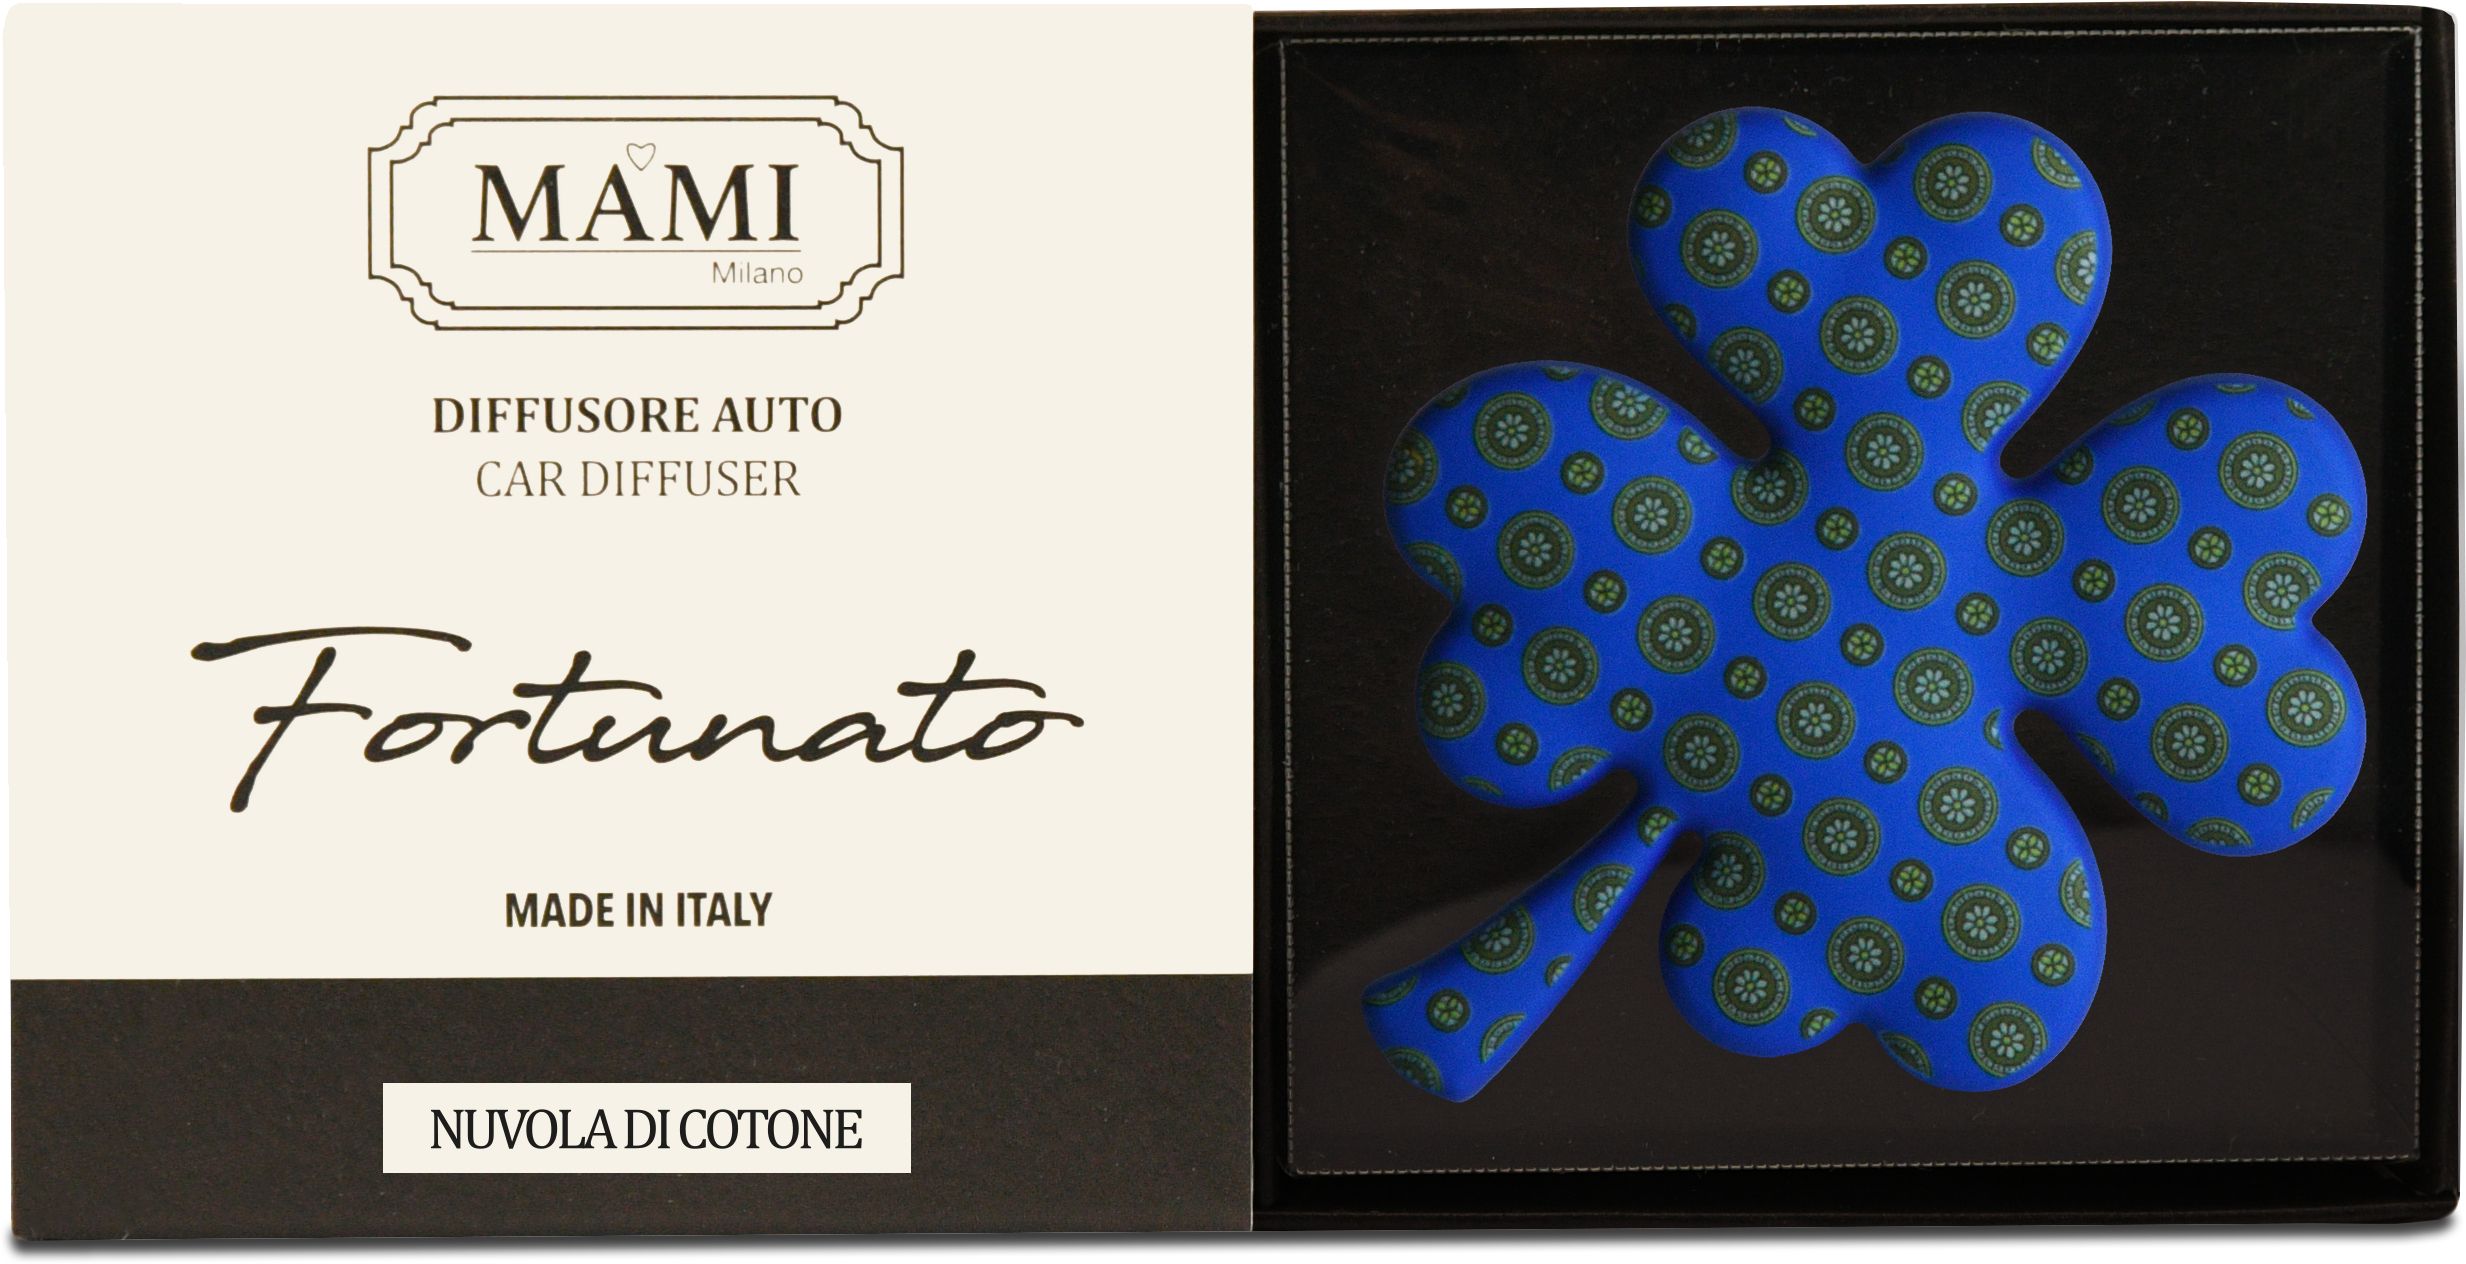 Offerta Fortunato - Fantasia Blu Mami Milano